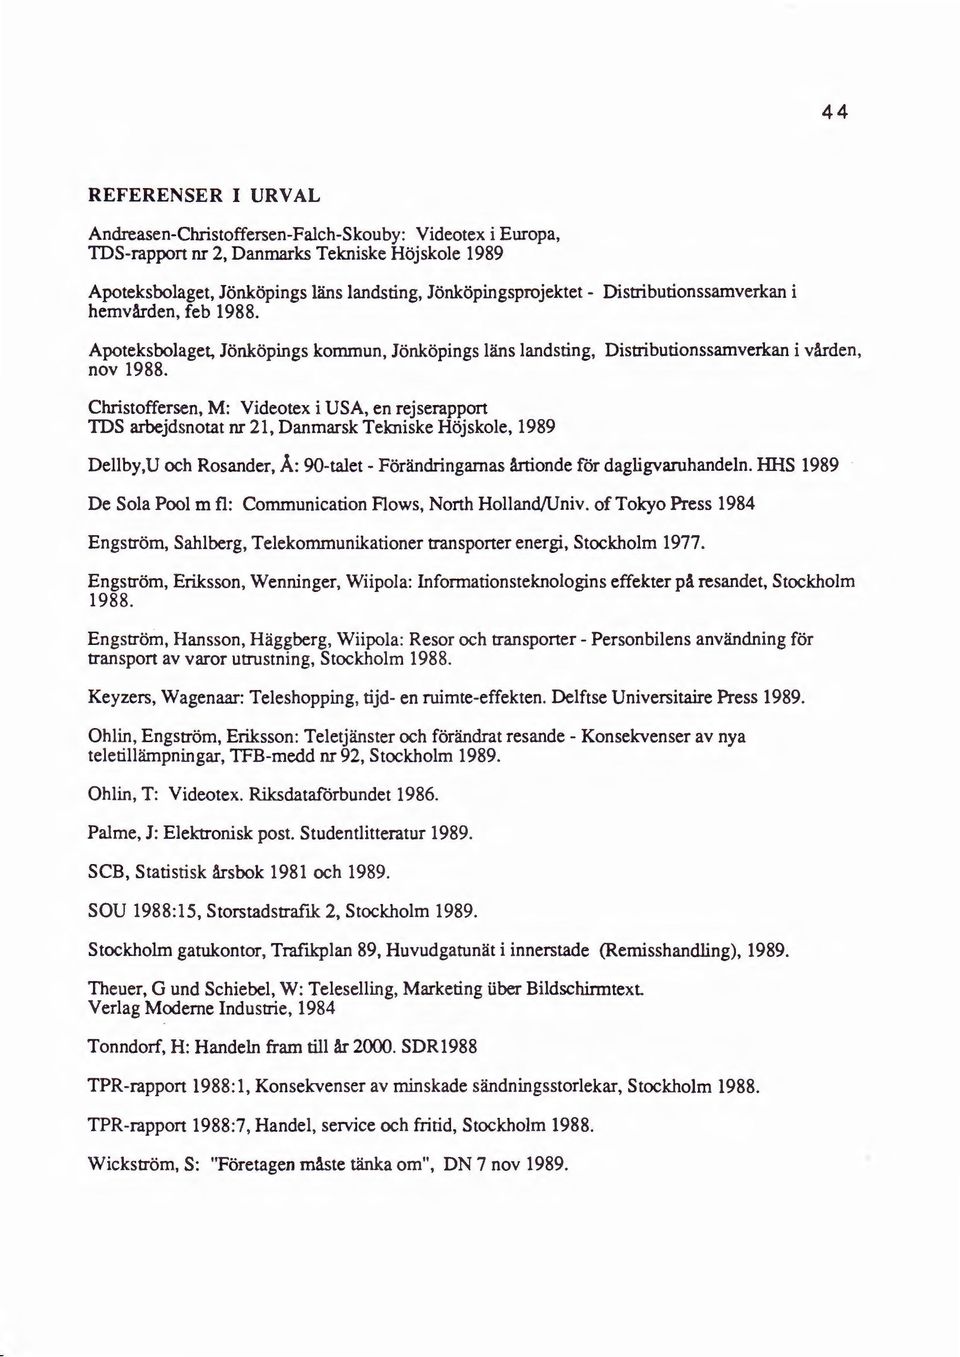 Christoffersen, M: Videotex i USA, en rejserapport TDS arbejdsnotat nr 21, Danmarsk Tekniske Hojskole, 1989 Dellby,U och Rosander, A: 90-talet- Forandringamas Artionde for dagligvaruhandeln.